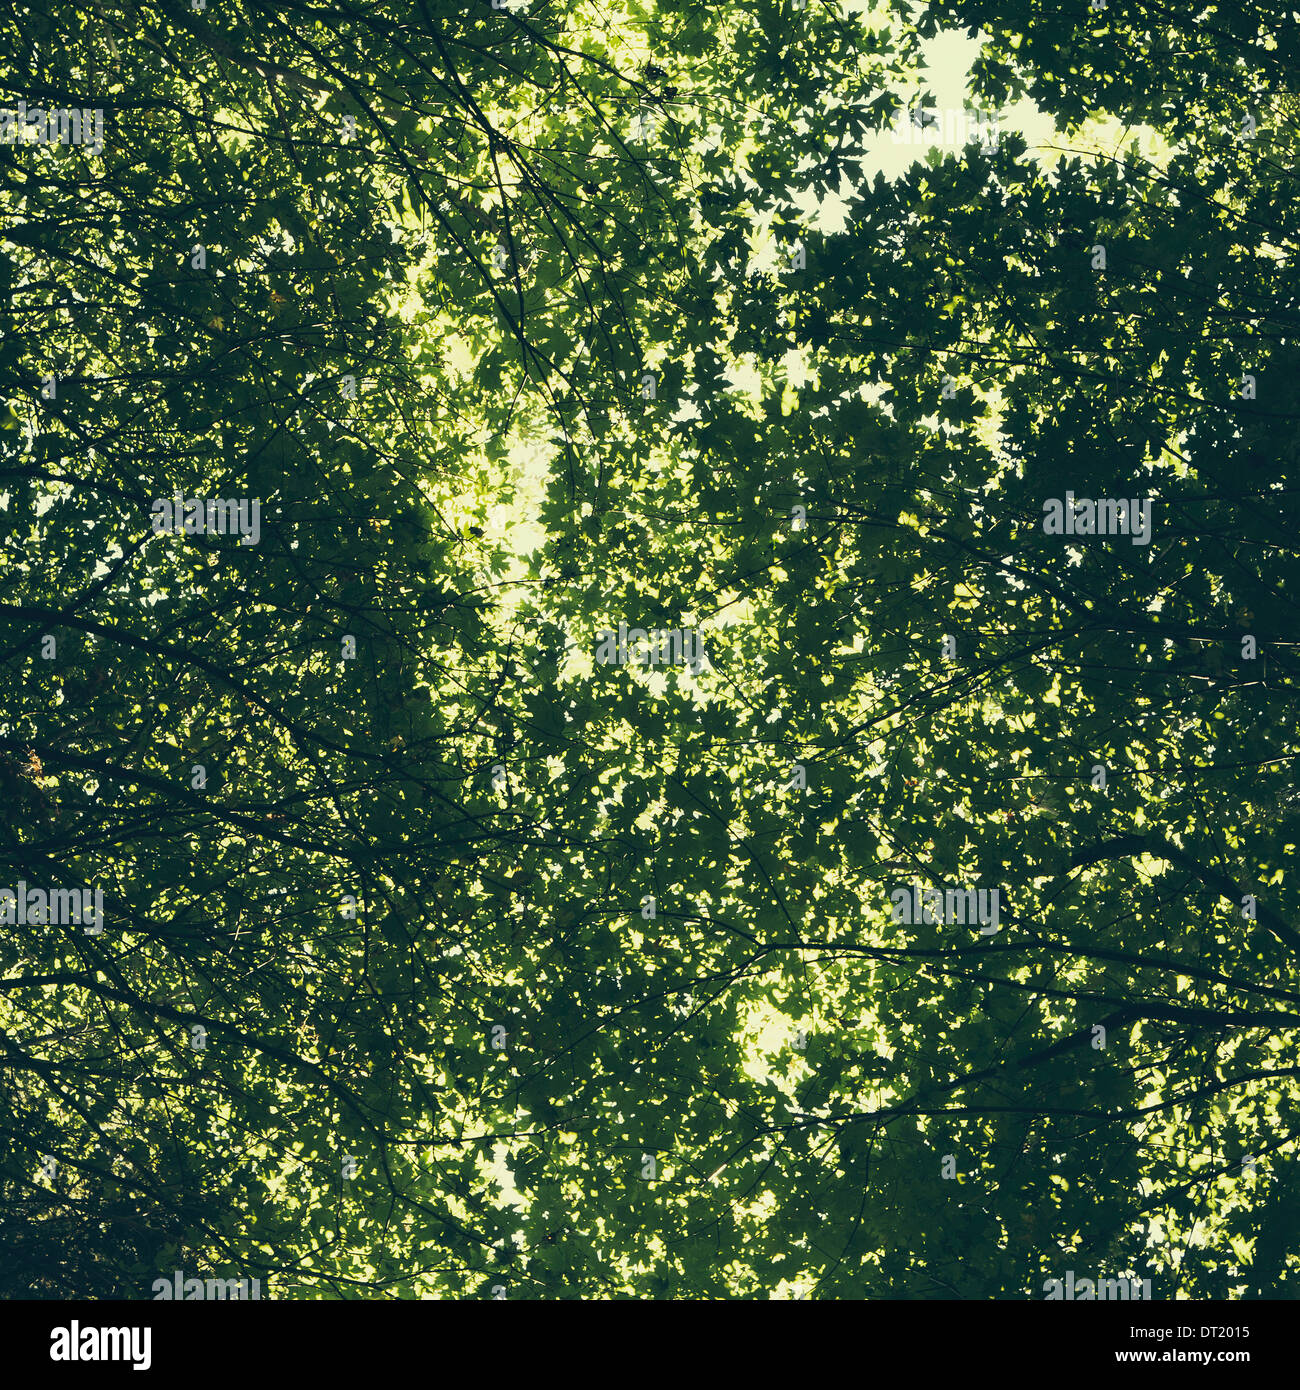 L'albero canopy di grandi alberi di acero con lussureggianti foglie verdi osservato dalla terra Foto Stock